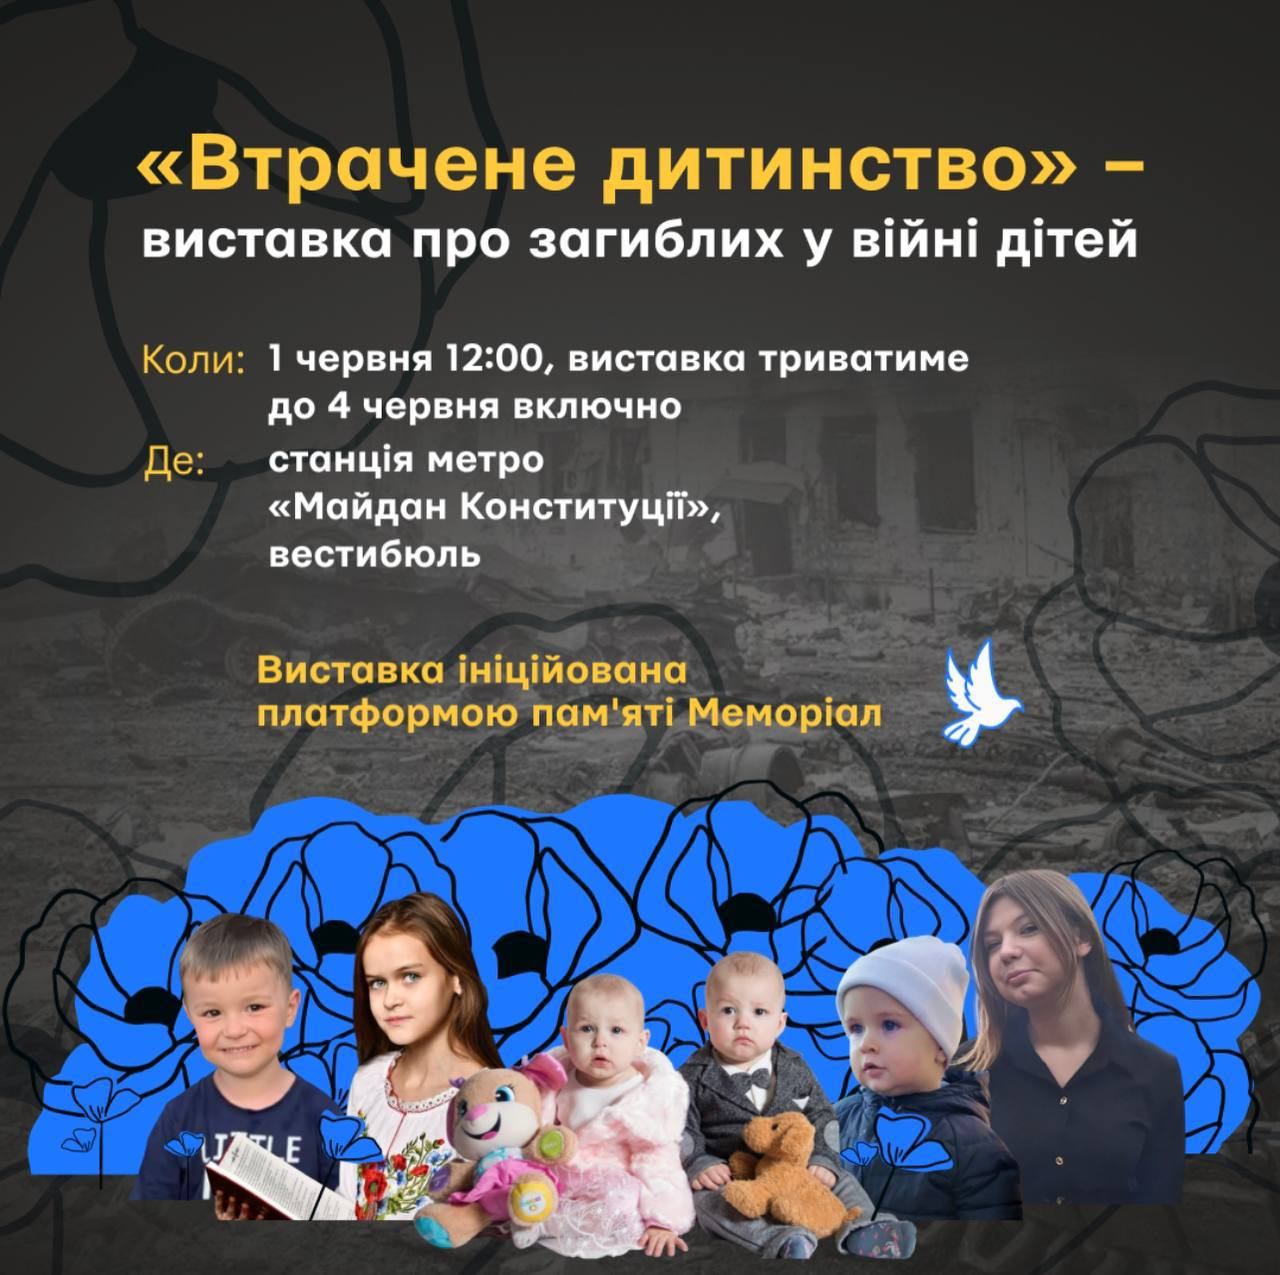 метро Харків, виставка у метро Харкова, загиблі діти